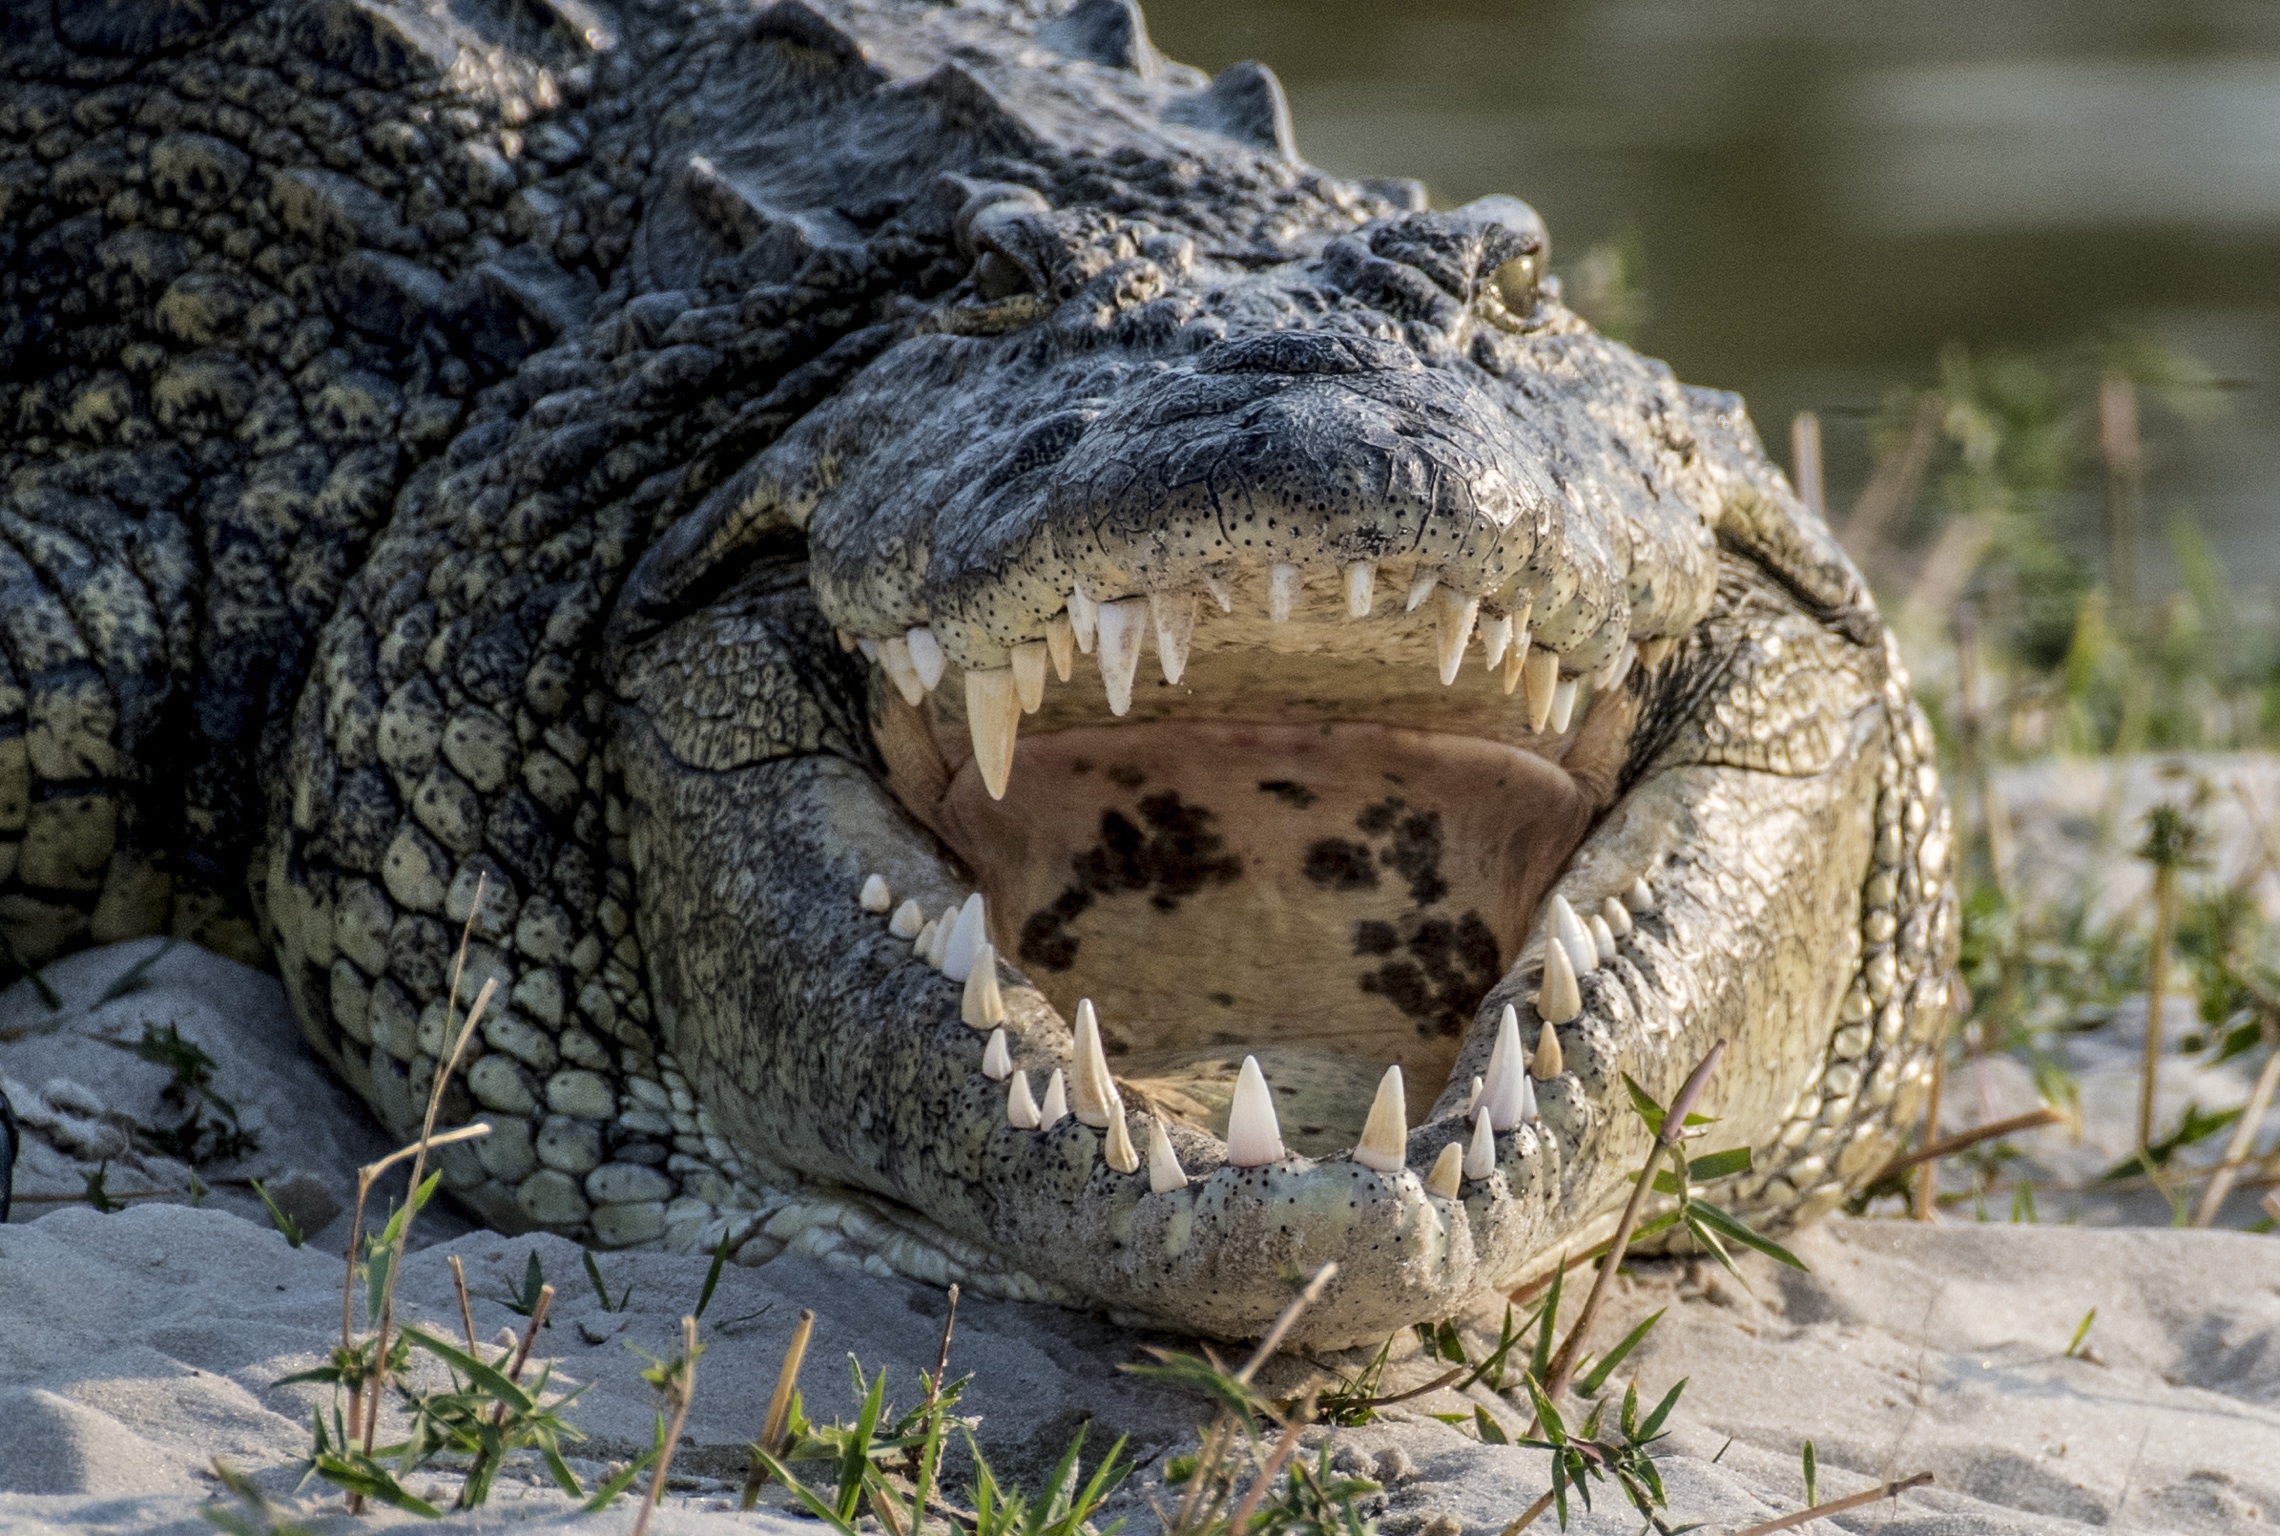 La mâchoire du crocodile a une forme en V.